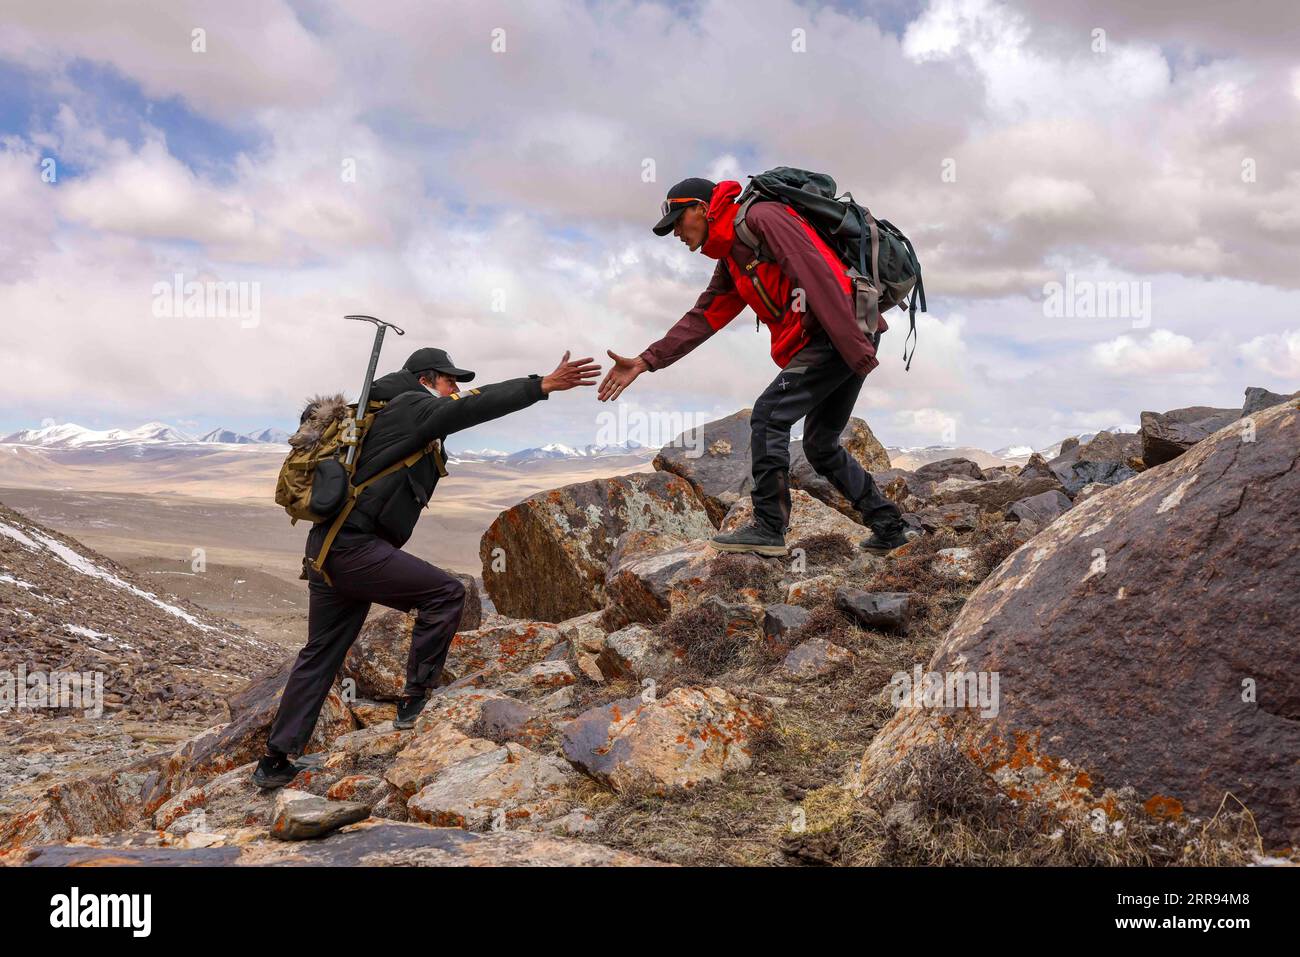 210528 -- URUMQI, 28 maggio 2021 -- Bikmirza Turdil L prende parte ad un addestramento mirato sulla Muztagh Ata nella regione autonoma dello Xinjiang Uygur della Cina nordoccidentale, 16 maggio 2021. Bikmirza, un allevatore di 24 anni, nacque e crebbe ai piedi del Muztagh Ata, un picco con un'altitudine di oltre 7.500 metri, nella regione autonoma di Uygur dello Xinjiang Pamir in Cina. Ha iniziato a lavorare come guida aiutando gli scalatori a trasportare attrezzature e provviste all'età di 18 anni. Scalare il Muztagh Ata, un simbolo di coraggio, è anche considerato come la cerimonia di raggiungimento della maggiore età per i giovani locali. A Subax Villag Foto Stock